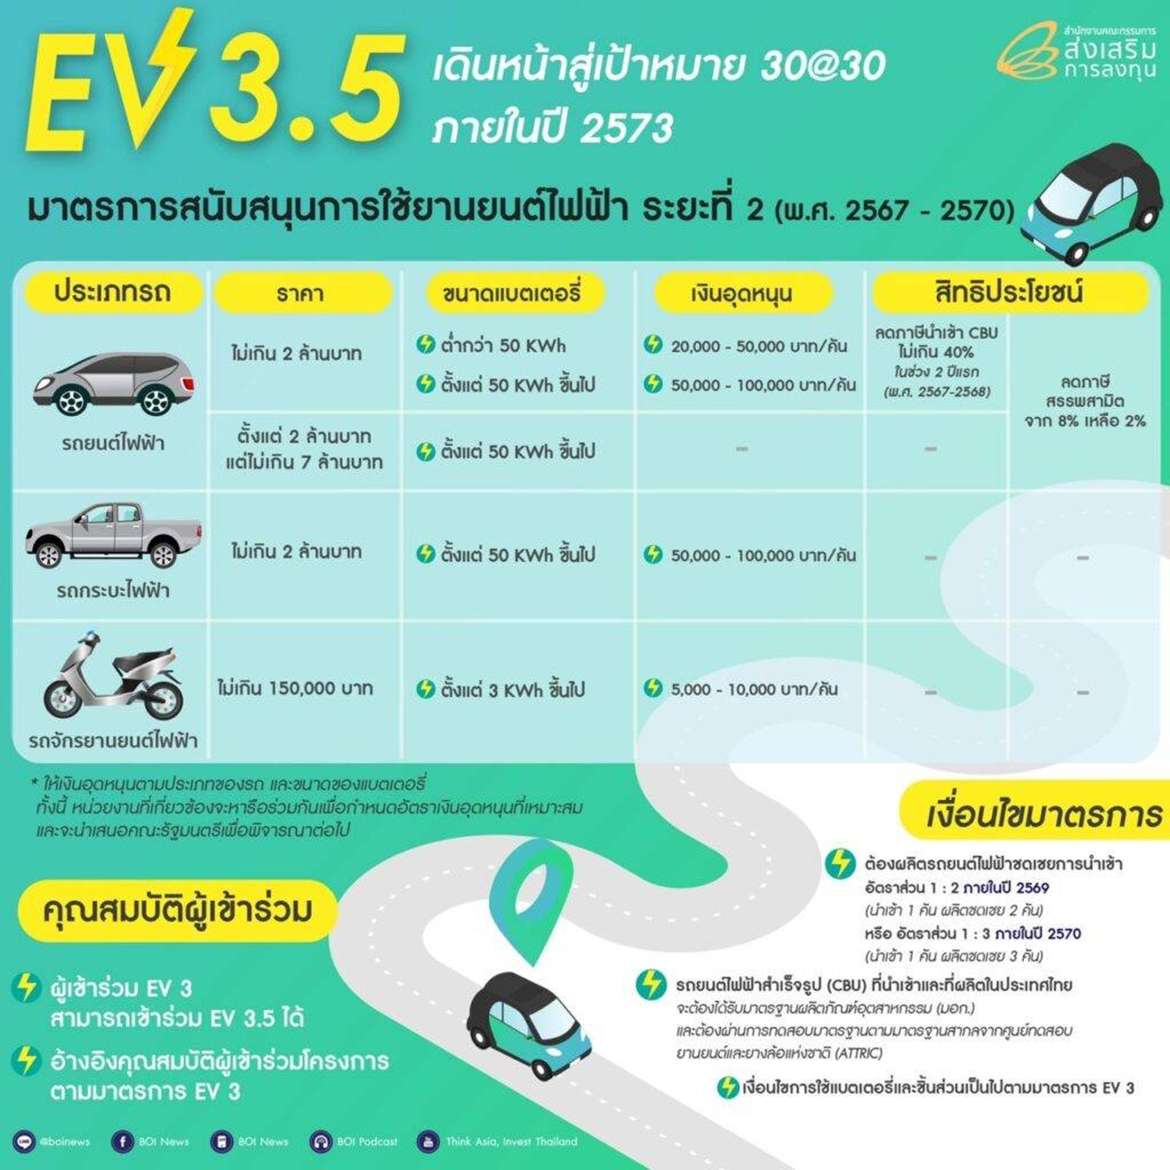 รถยนต์ไฟฟ้าจีน ผลิตไทย ... ค่ายไหน? ผลิตและขายเมื่อไหร่??, รถยนต์ไฟฟ้าจีน ผลิตไทย &#8230; ค่ายไหน?ผลิตและขายเมื่อไหร่??